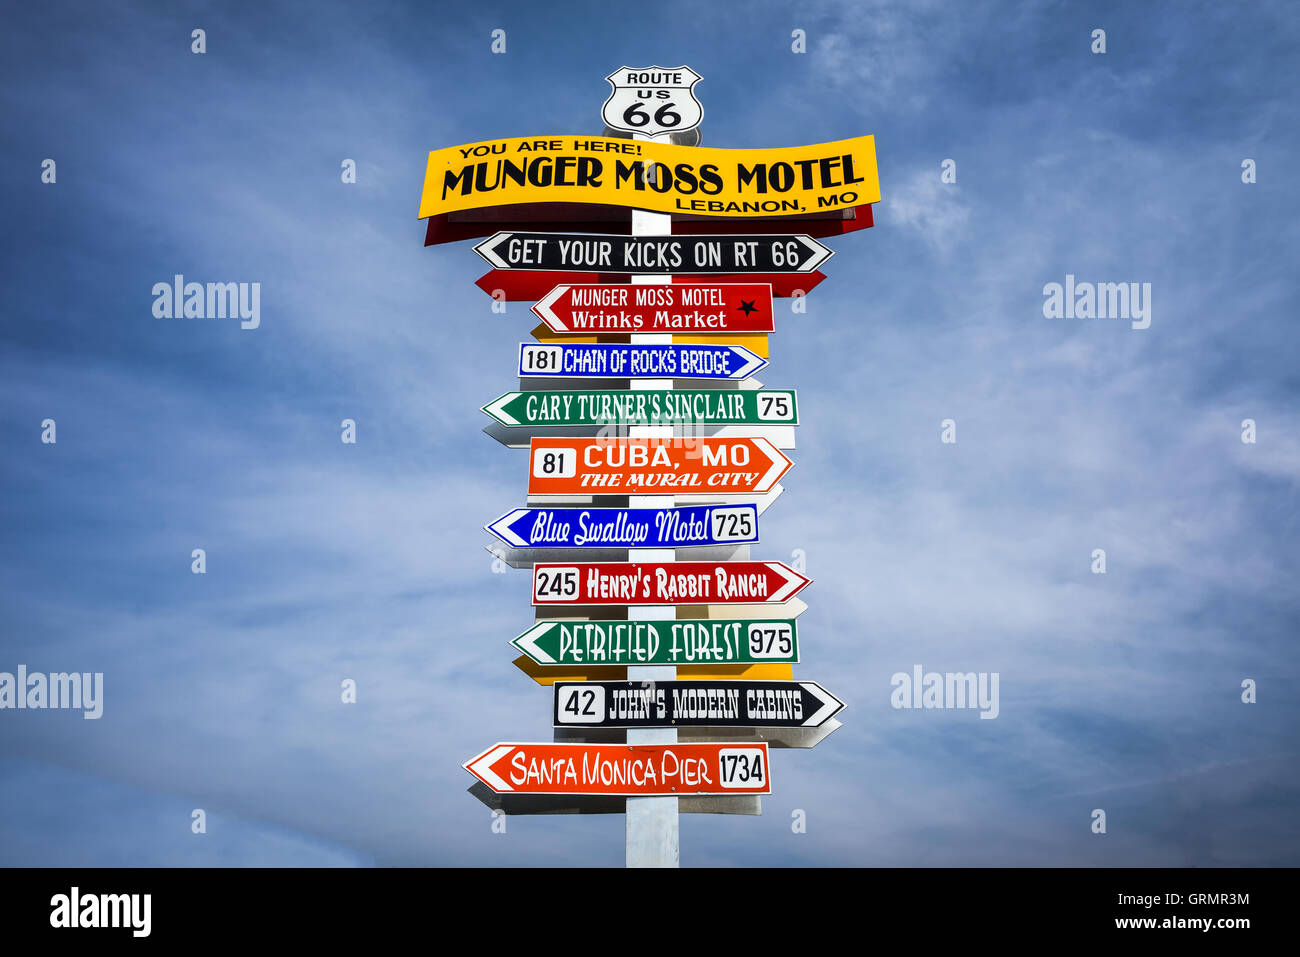 Dirección gracioso en el cartel Munger Moss Motel con nombres de famosos atractivos de la ruta 66. Foto de stock